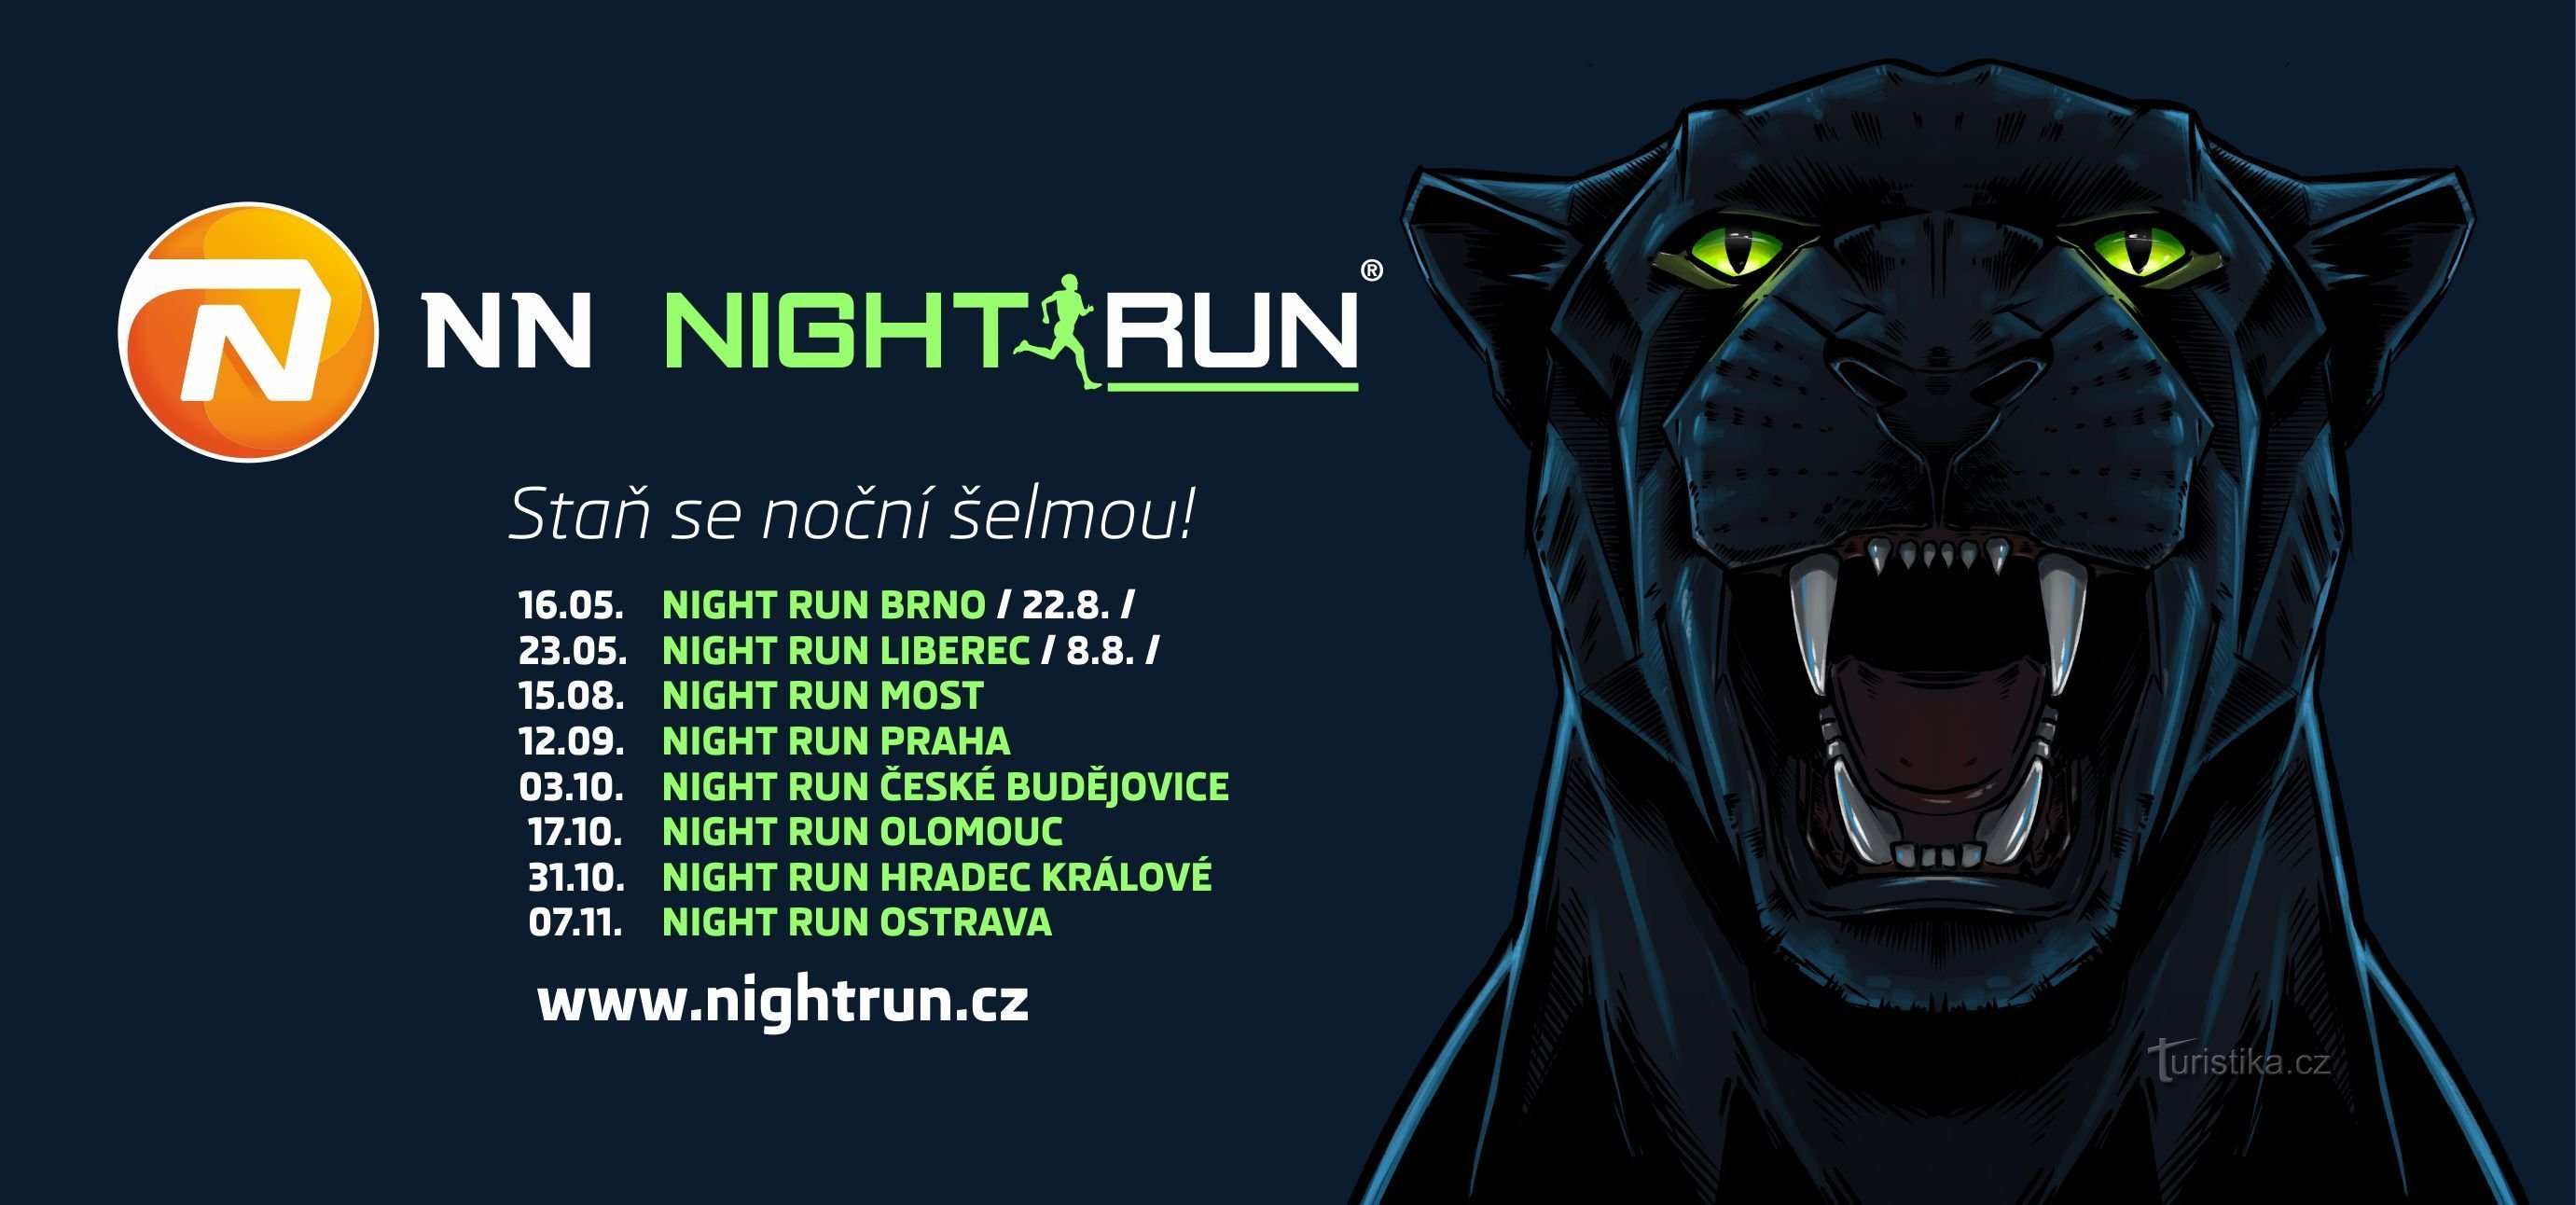 NN NIGHT RUN: Bảy lý do để chạy